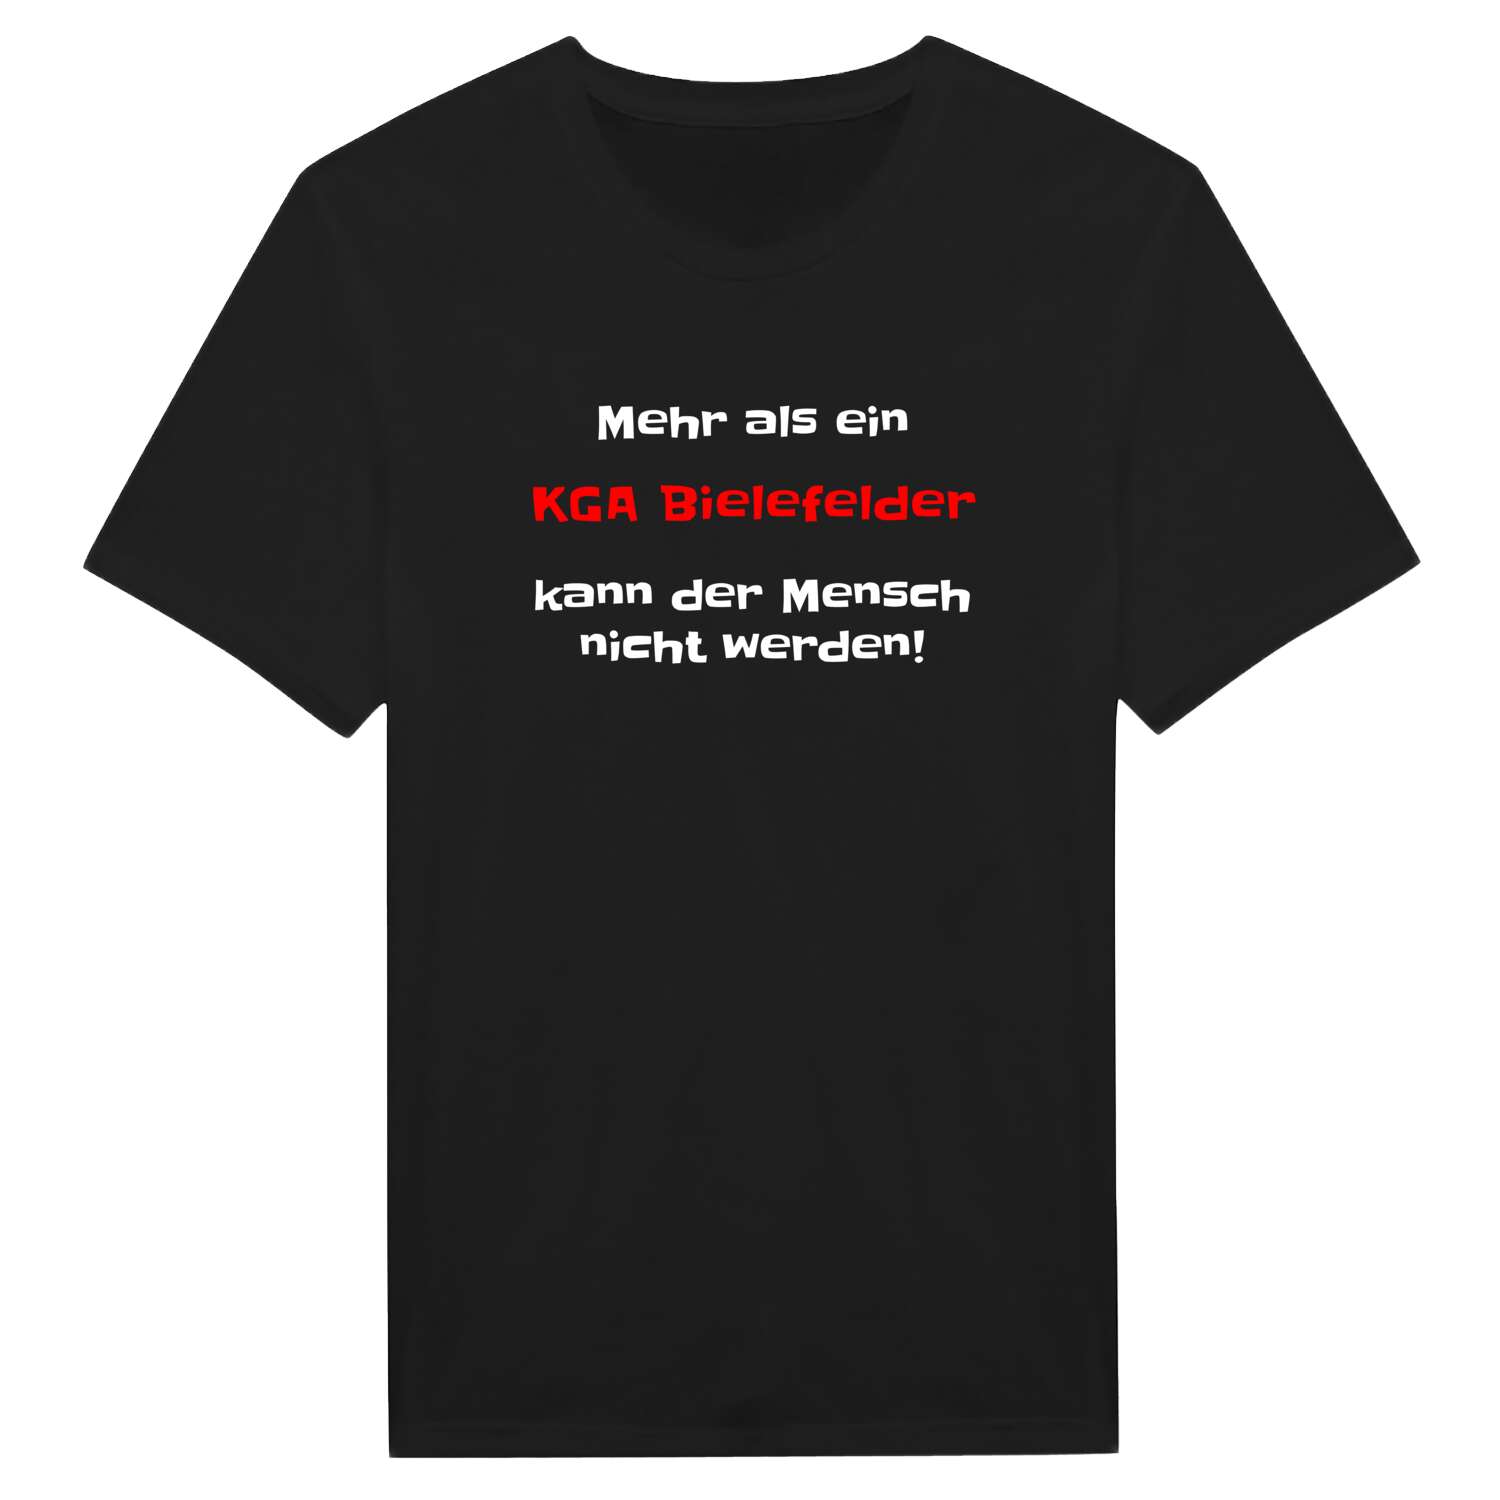 KGA Bielefeld T-Shirt »Mehr als ein«